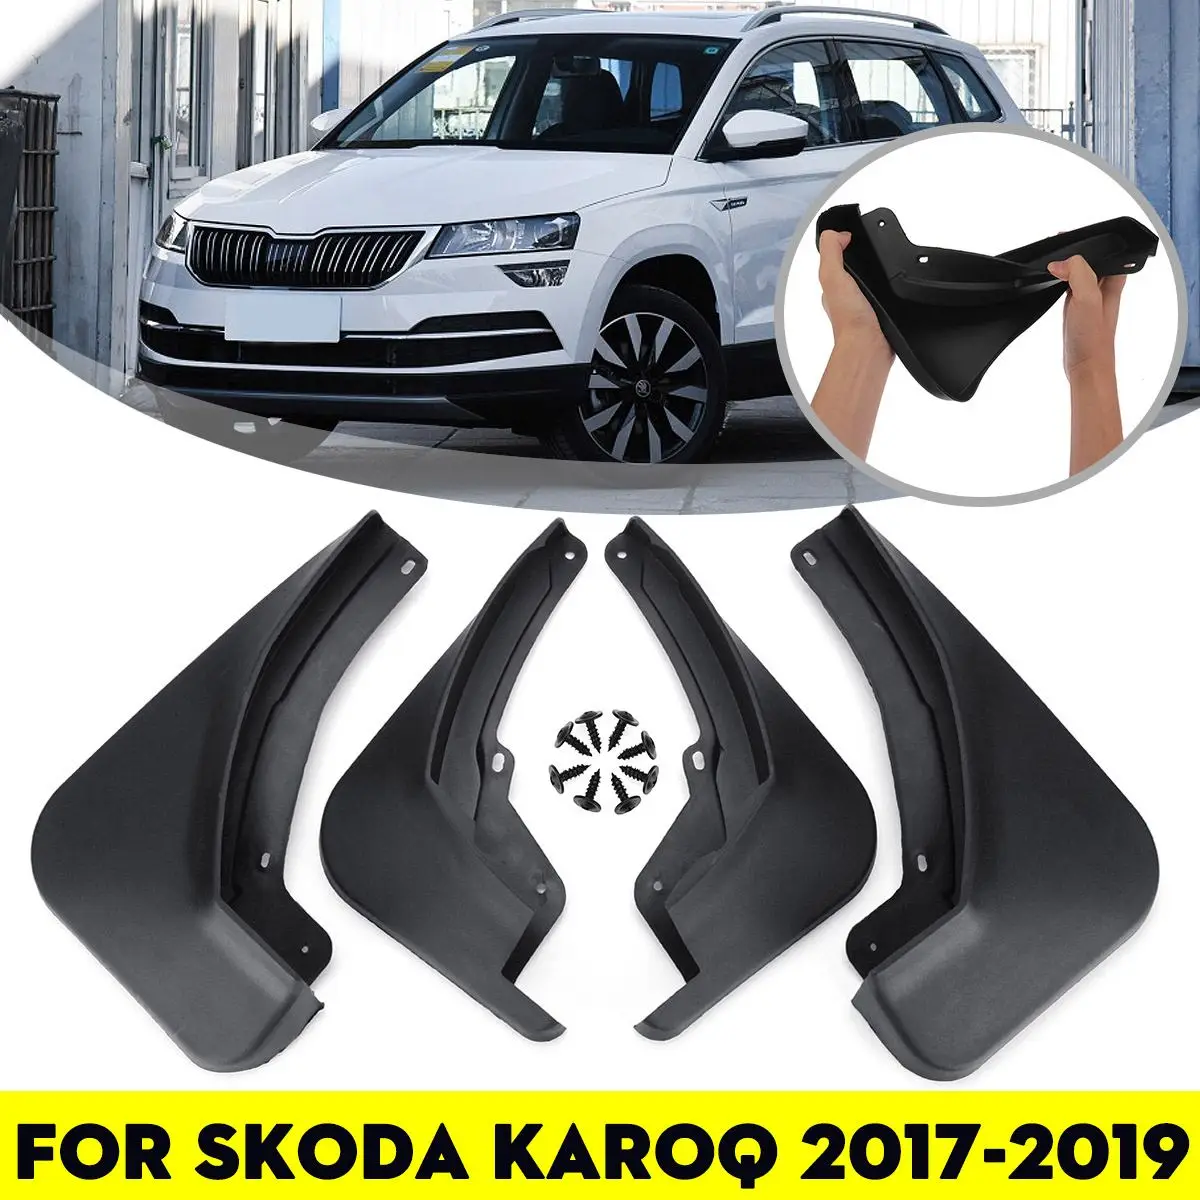 

Брызговики для Skoda Karoq 2019 2018 2017 2020 2021